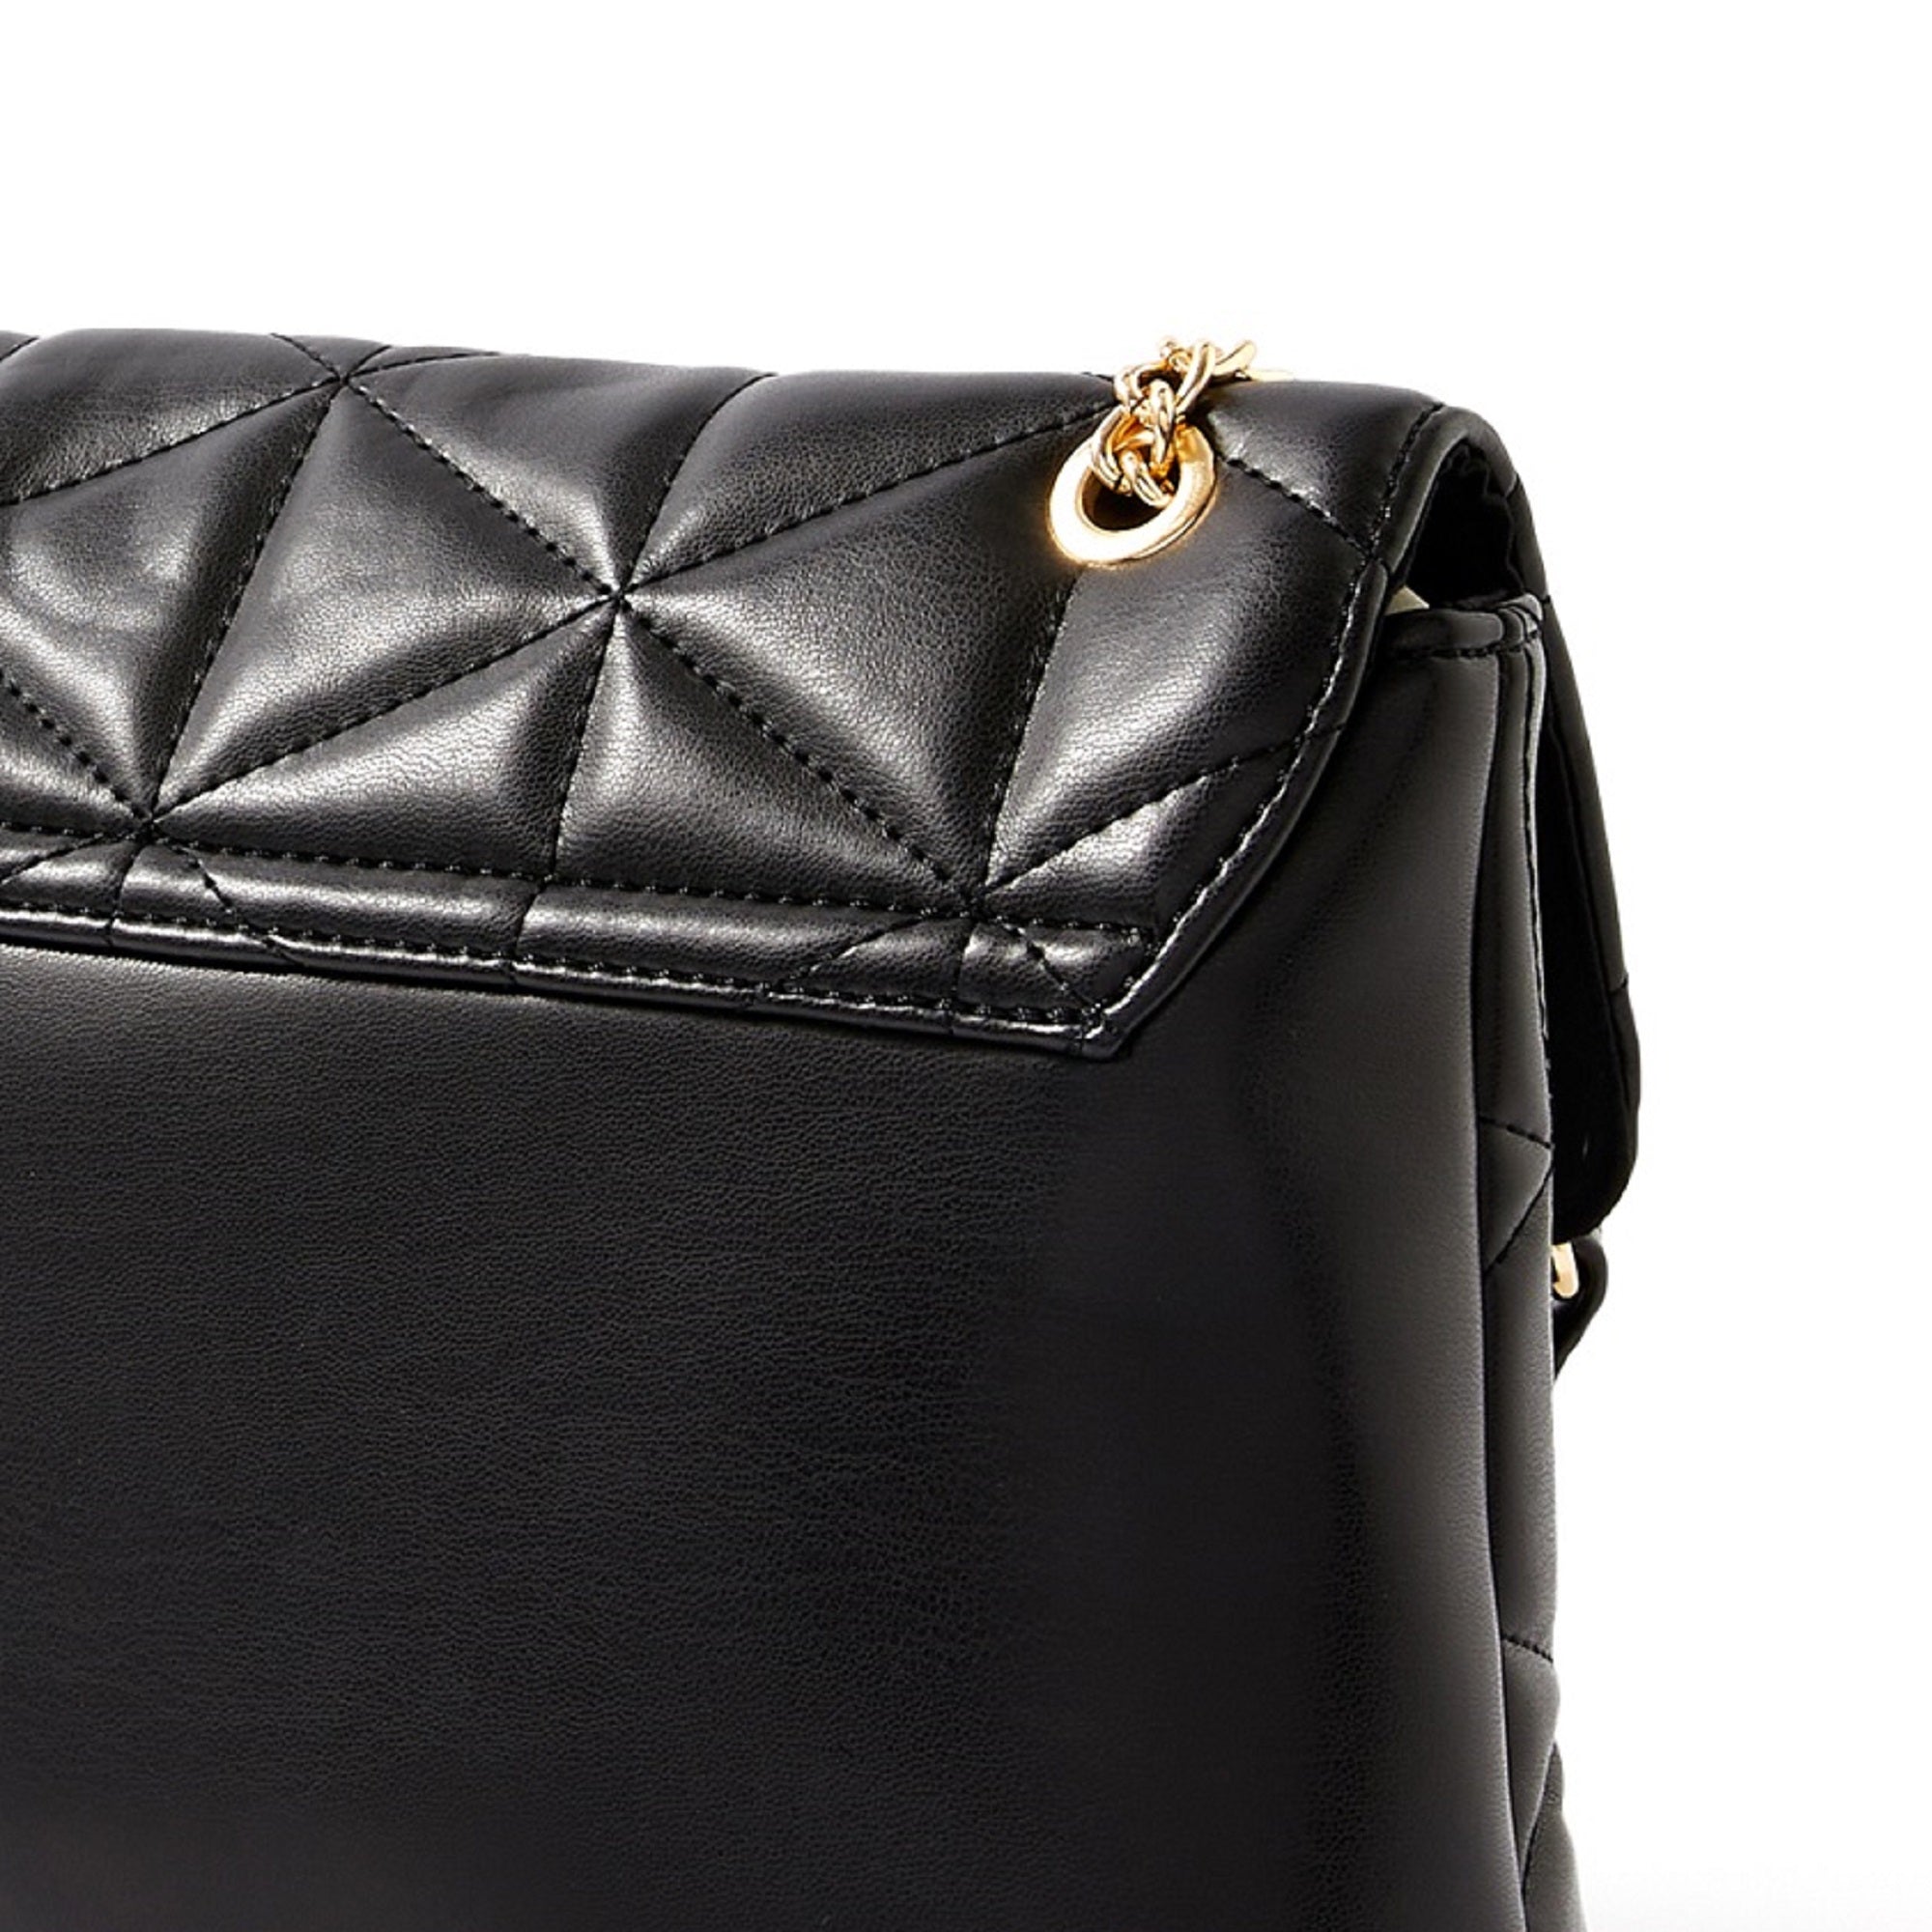 Accessorize London women's Faux Leather Black Eva Quilt Shoulder Sling bag